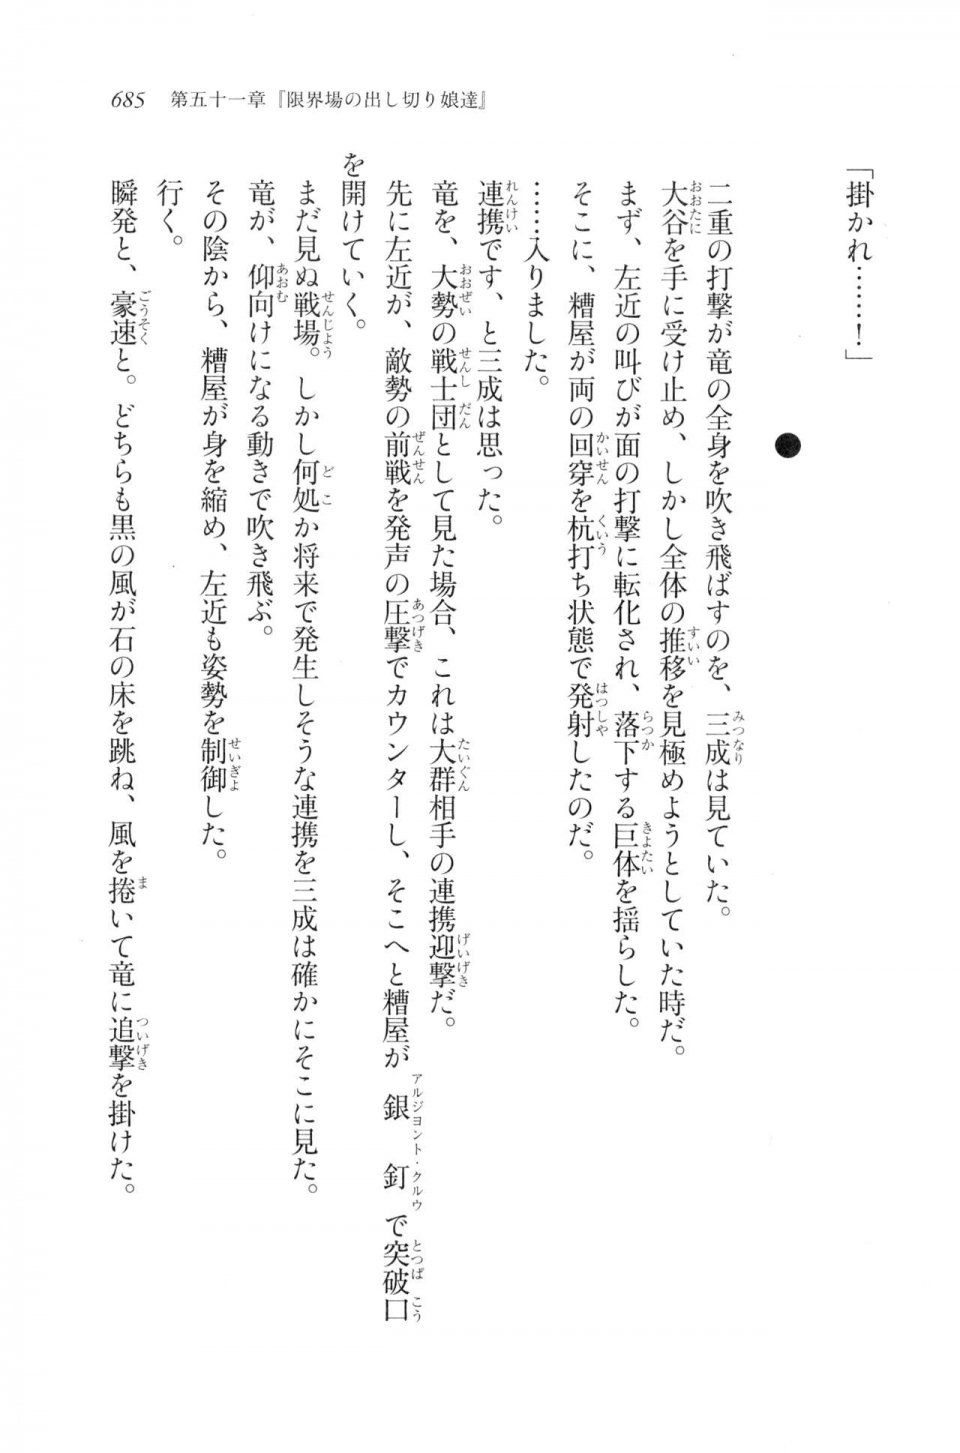 Kyoukai Senjou no Horizon LN Vol 20(8B) - Photo #685